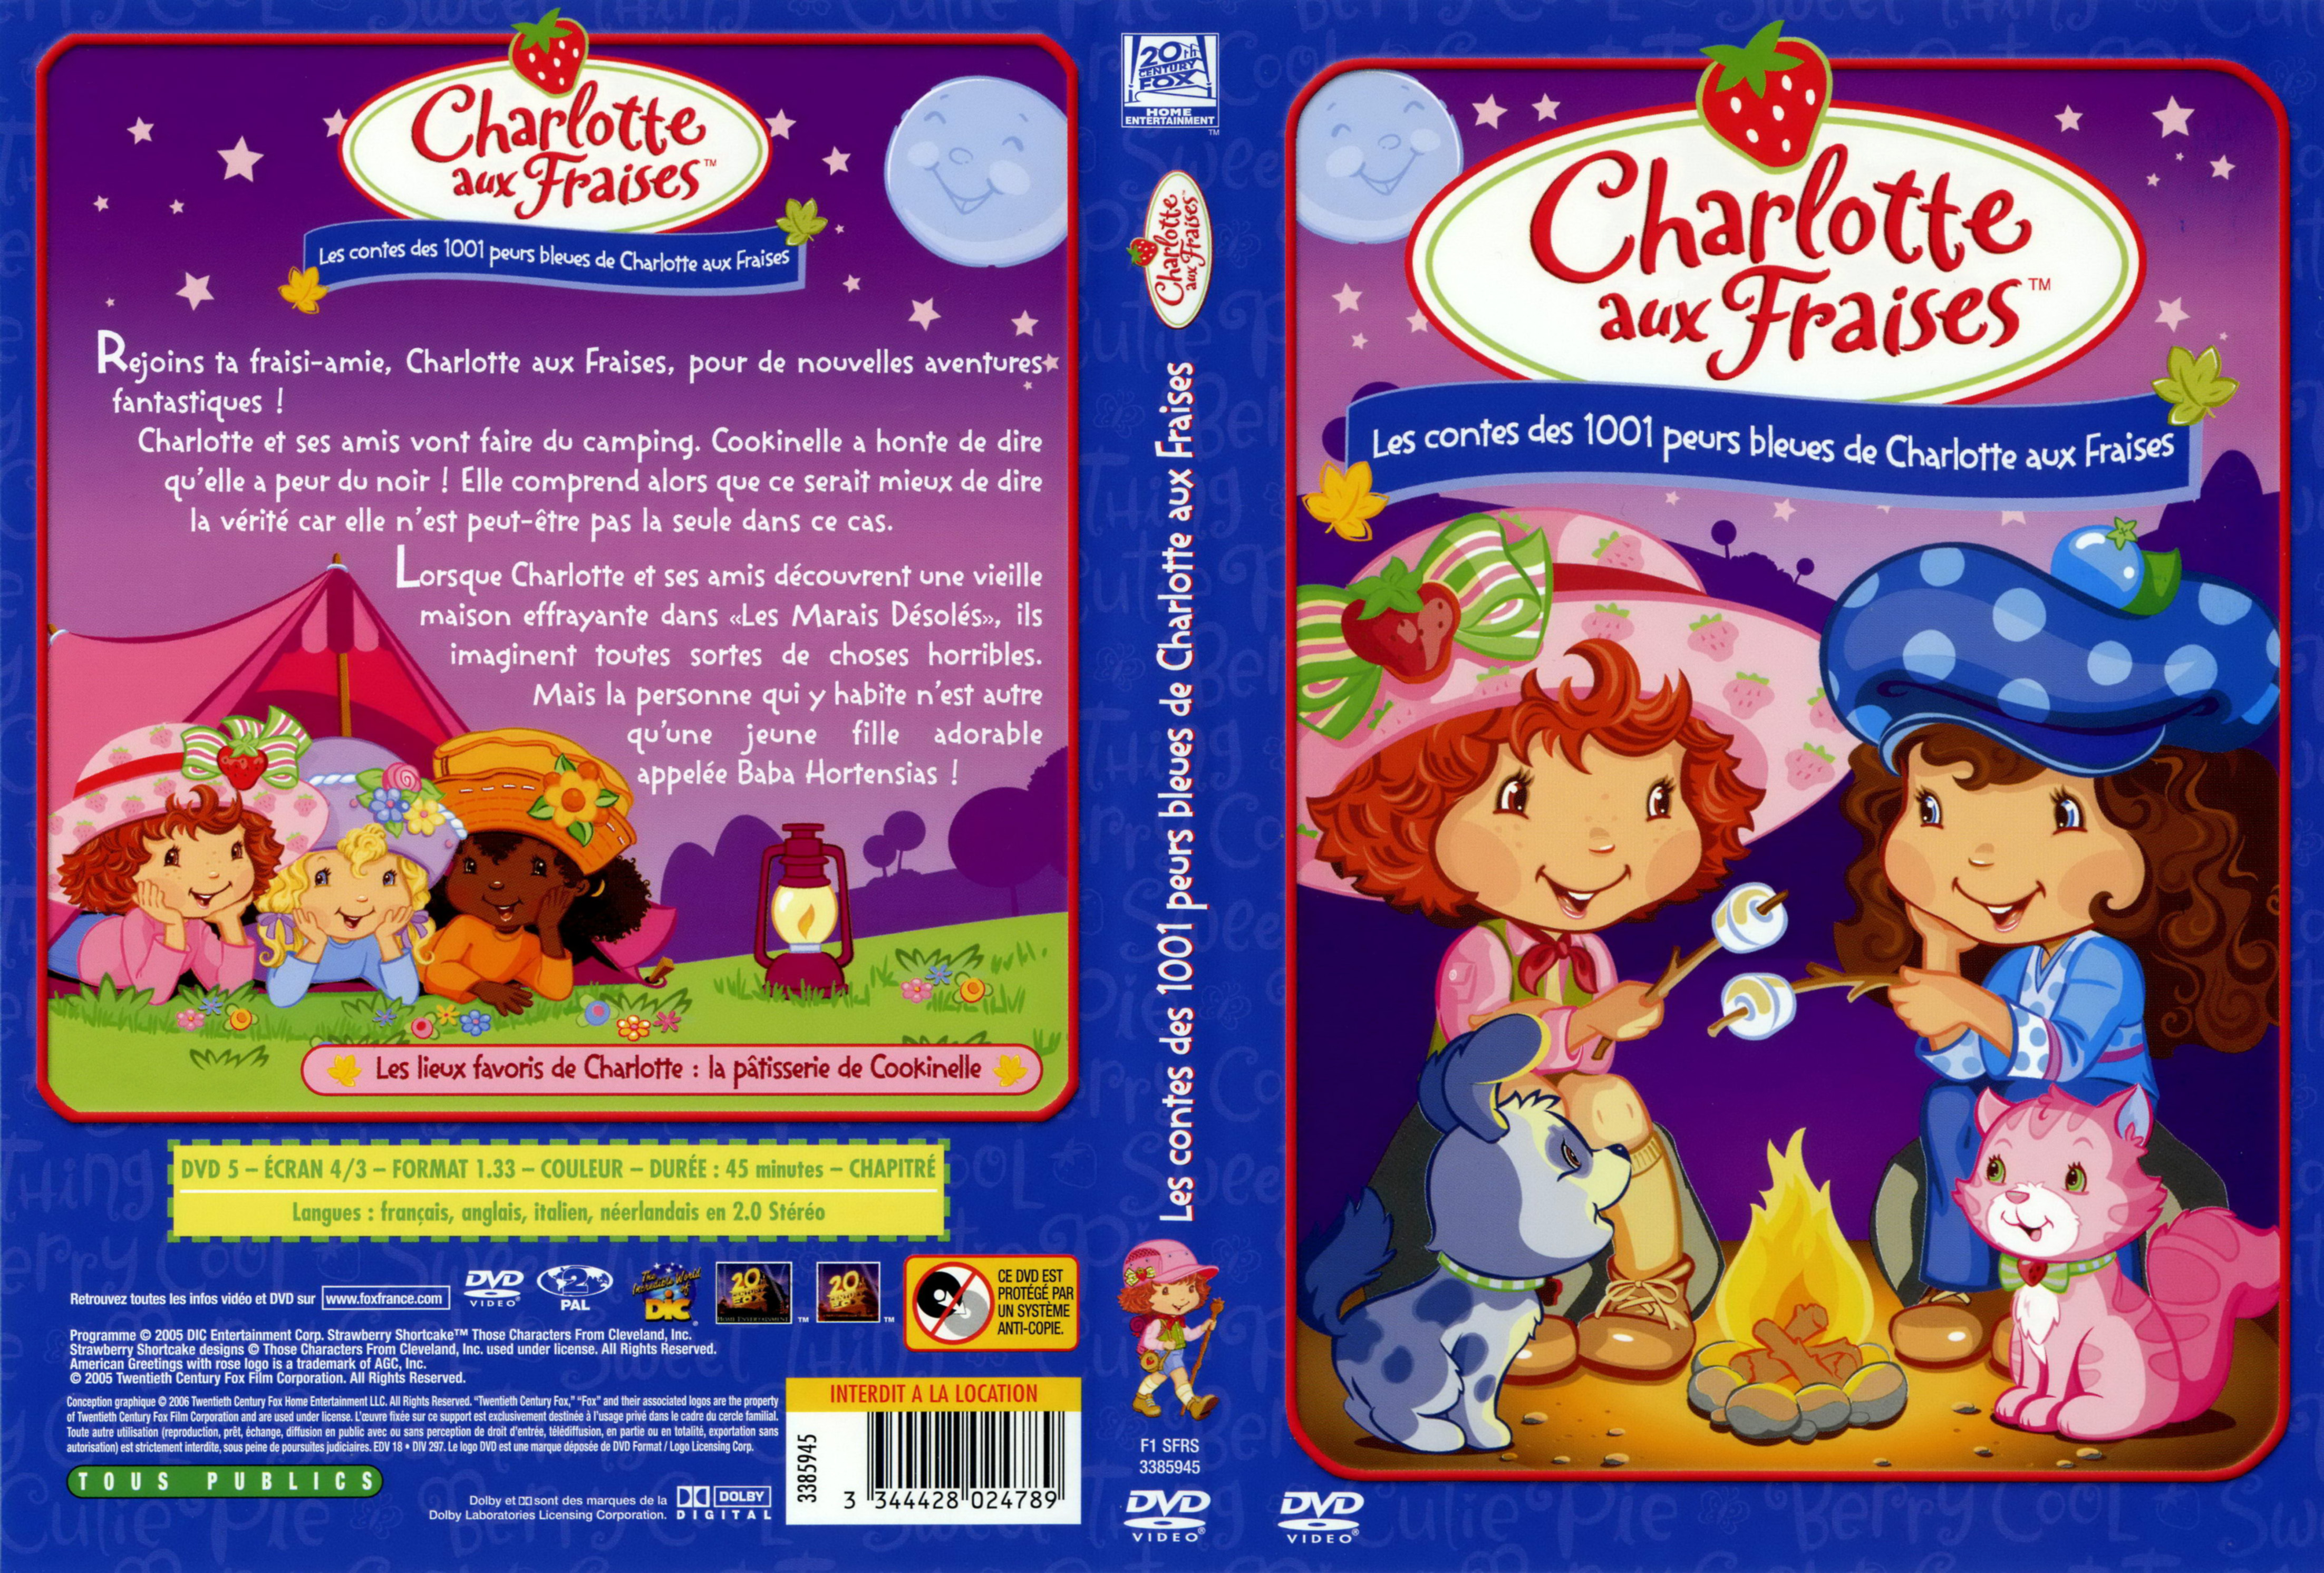 Jaquette DVD Charlotte aux fraises - Les contes des 1001 peurs bleues